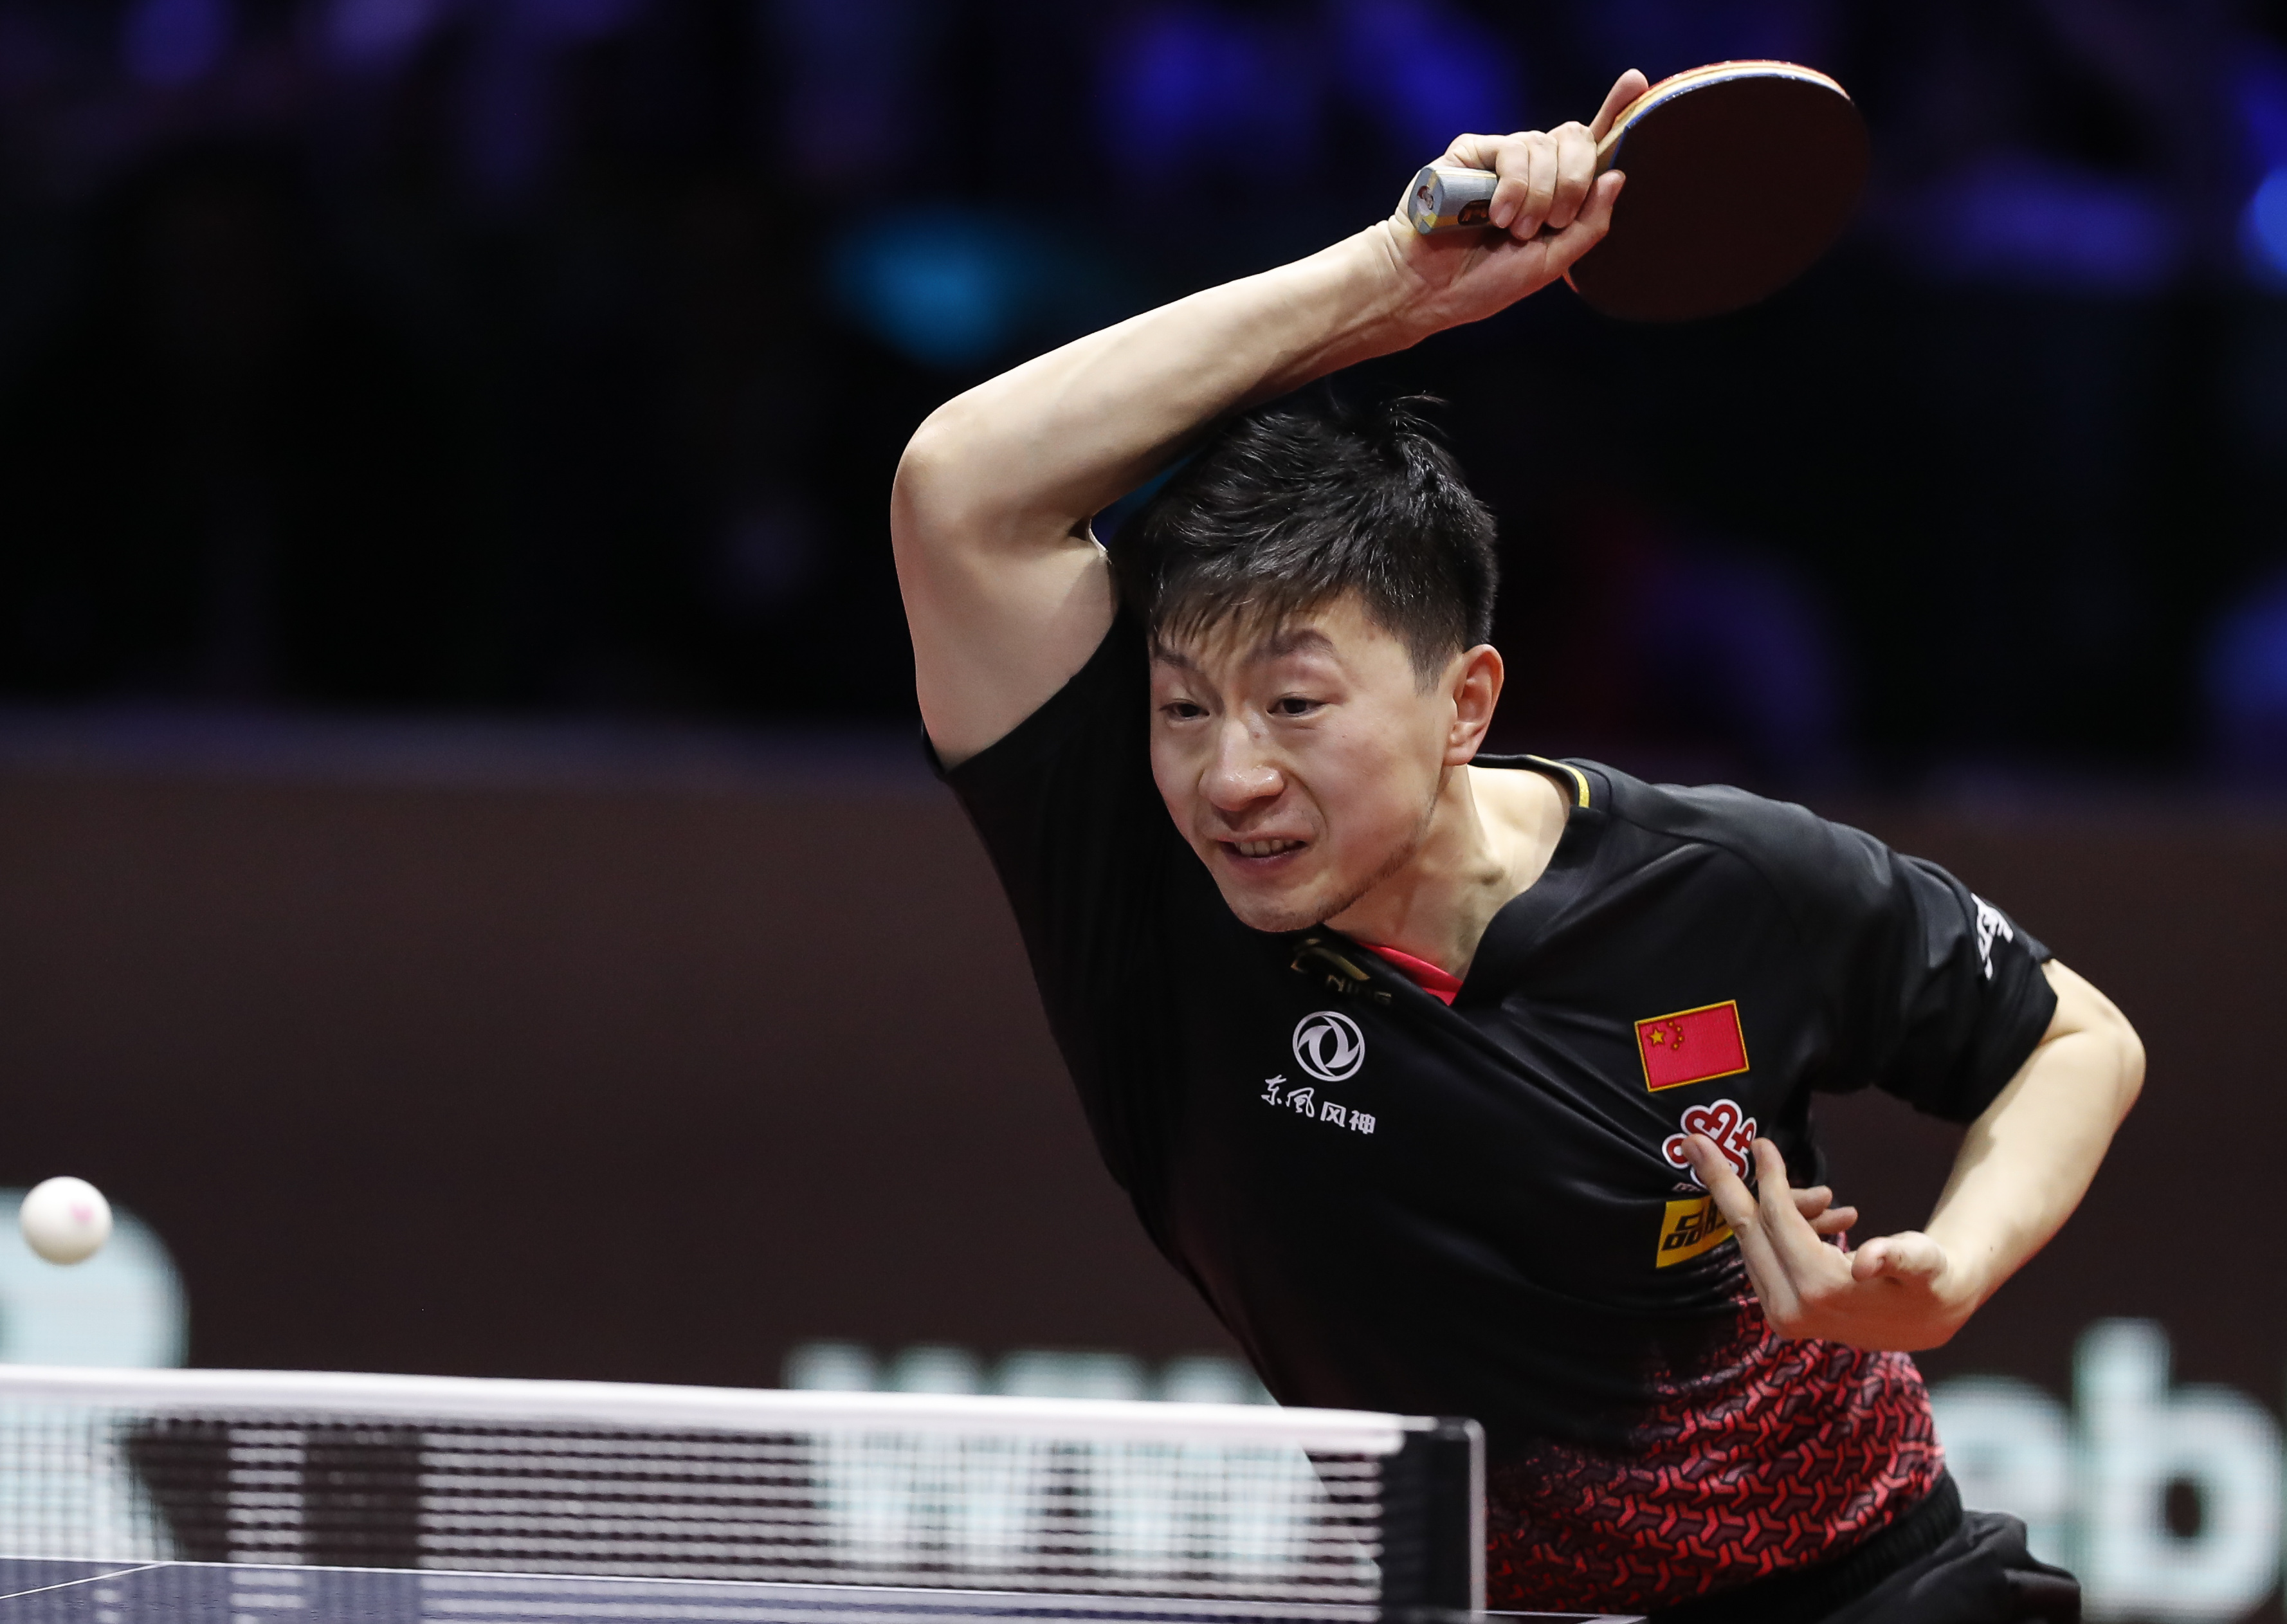 男子乒乓球单打决赛 马龙4-0张继科夺冠_青新闻__中国青年网